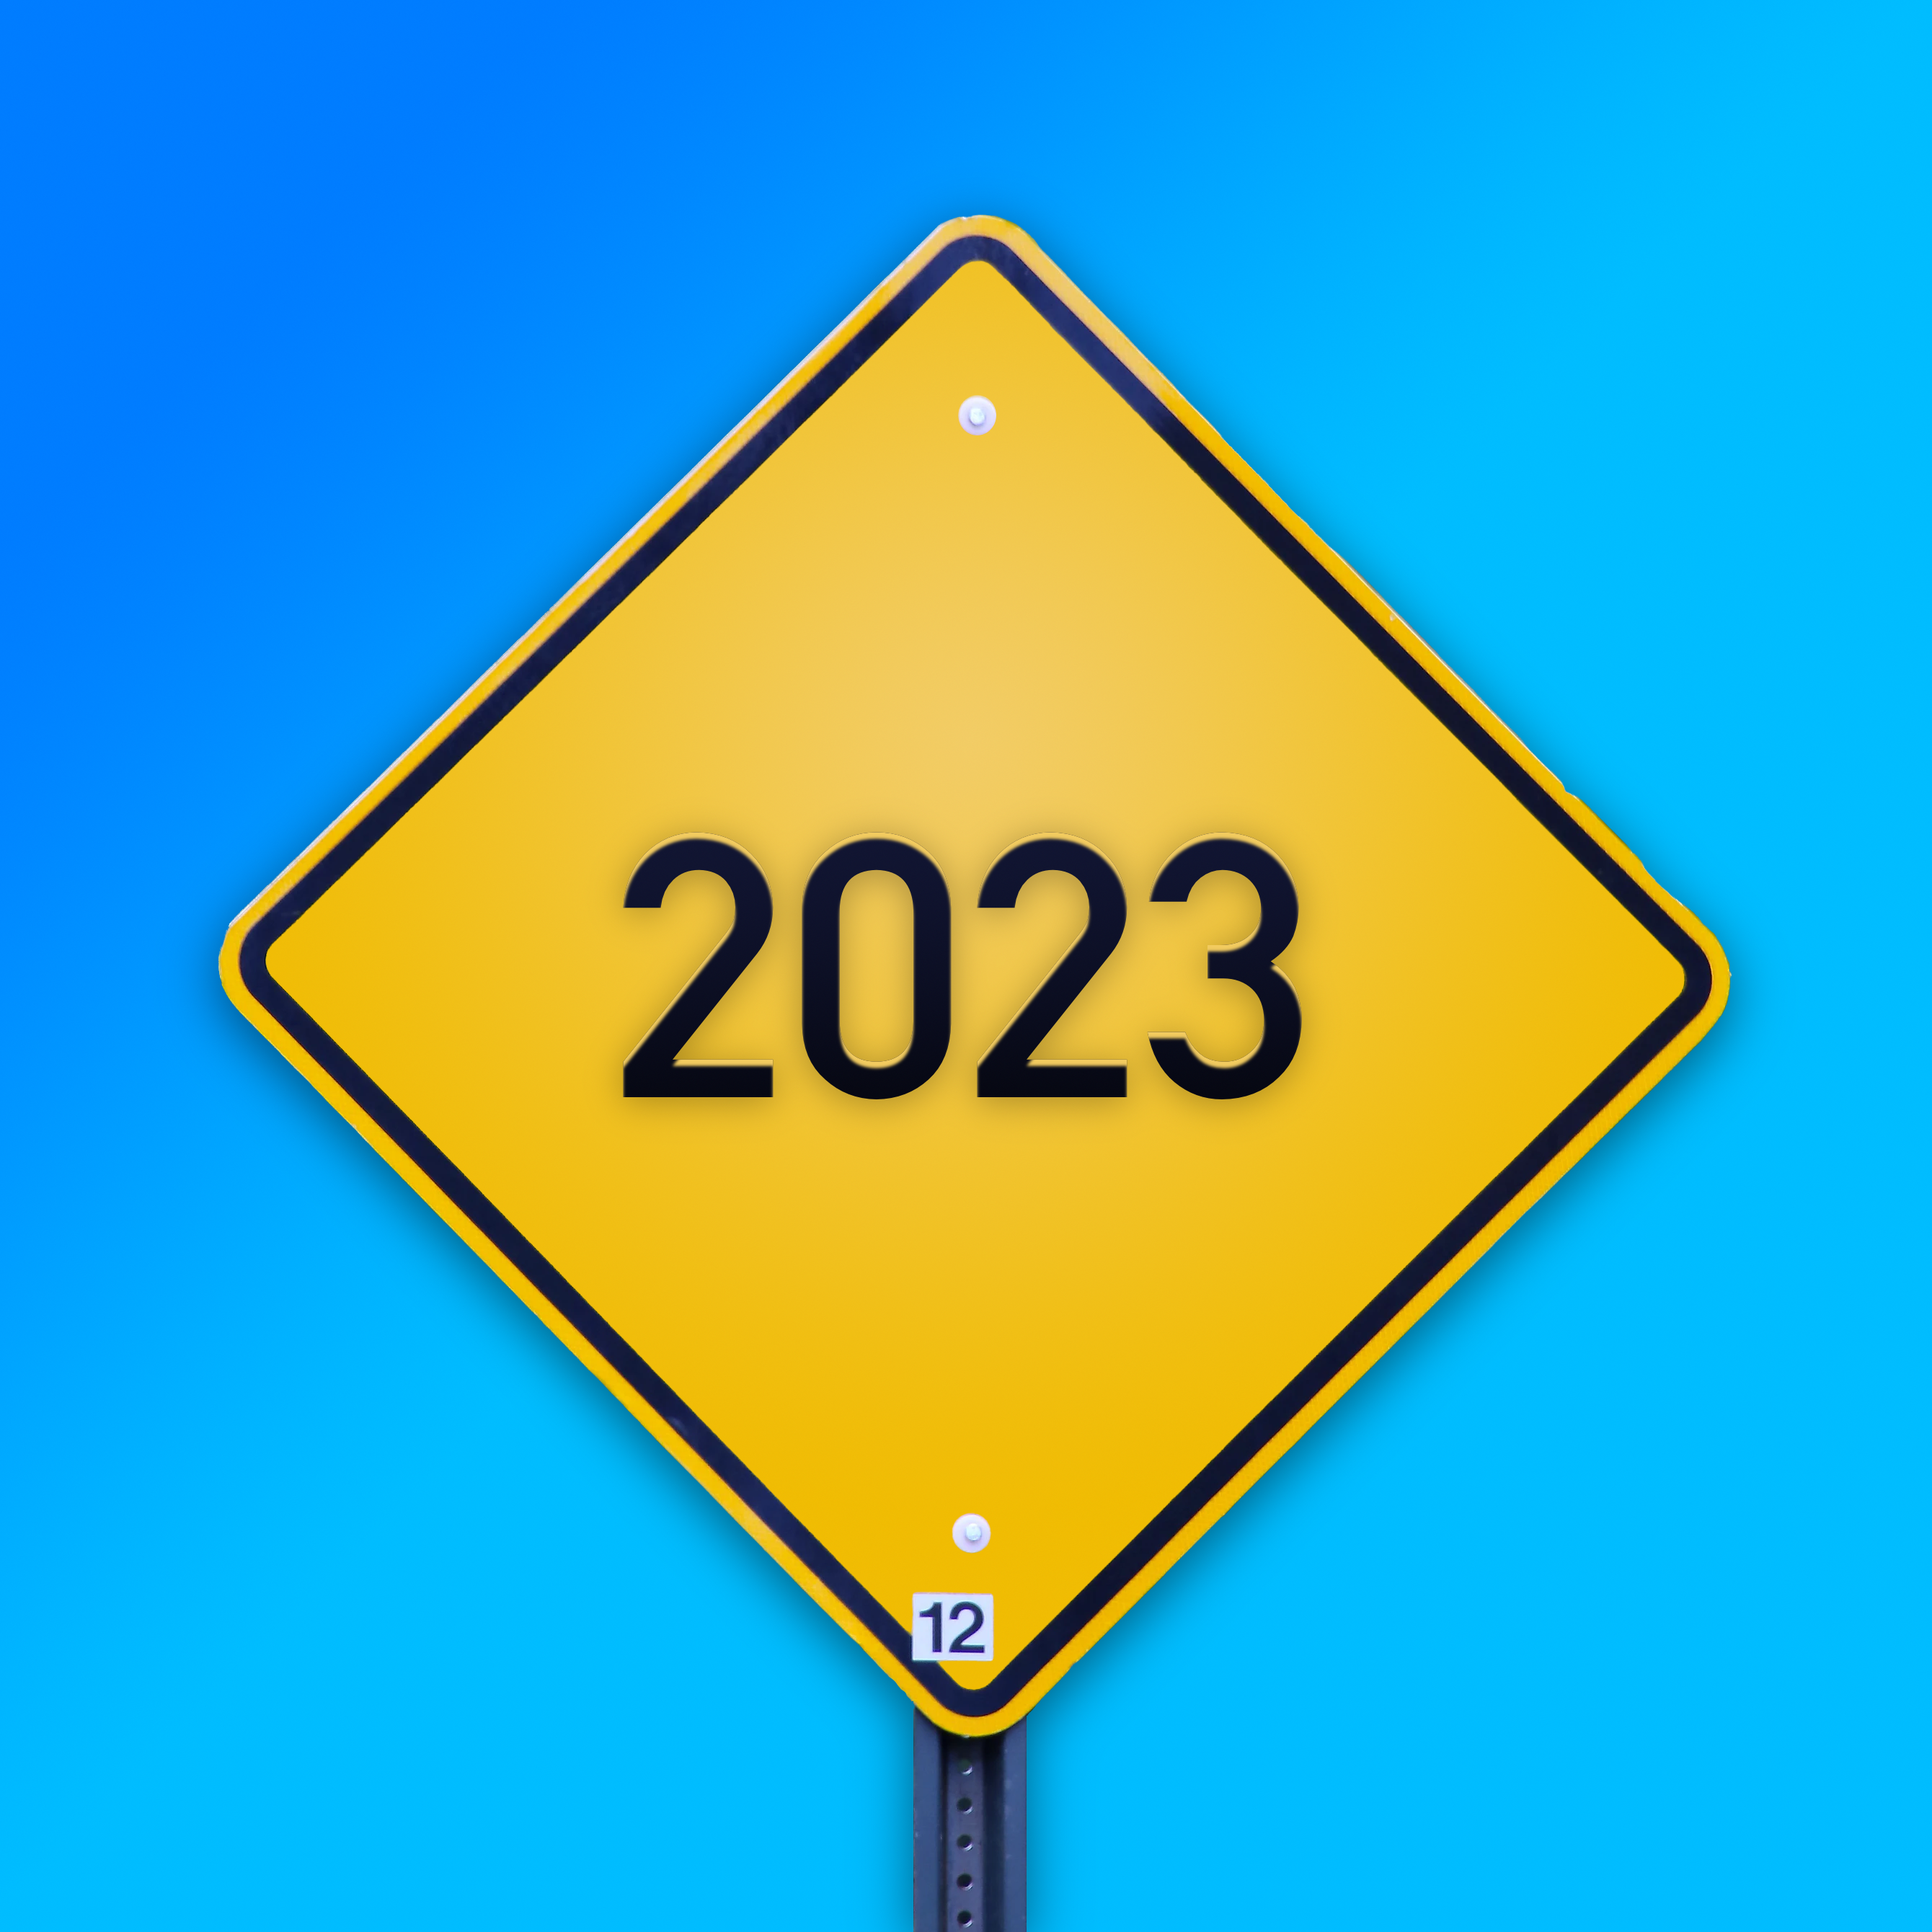 Roadmap 2023